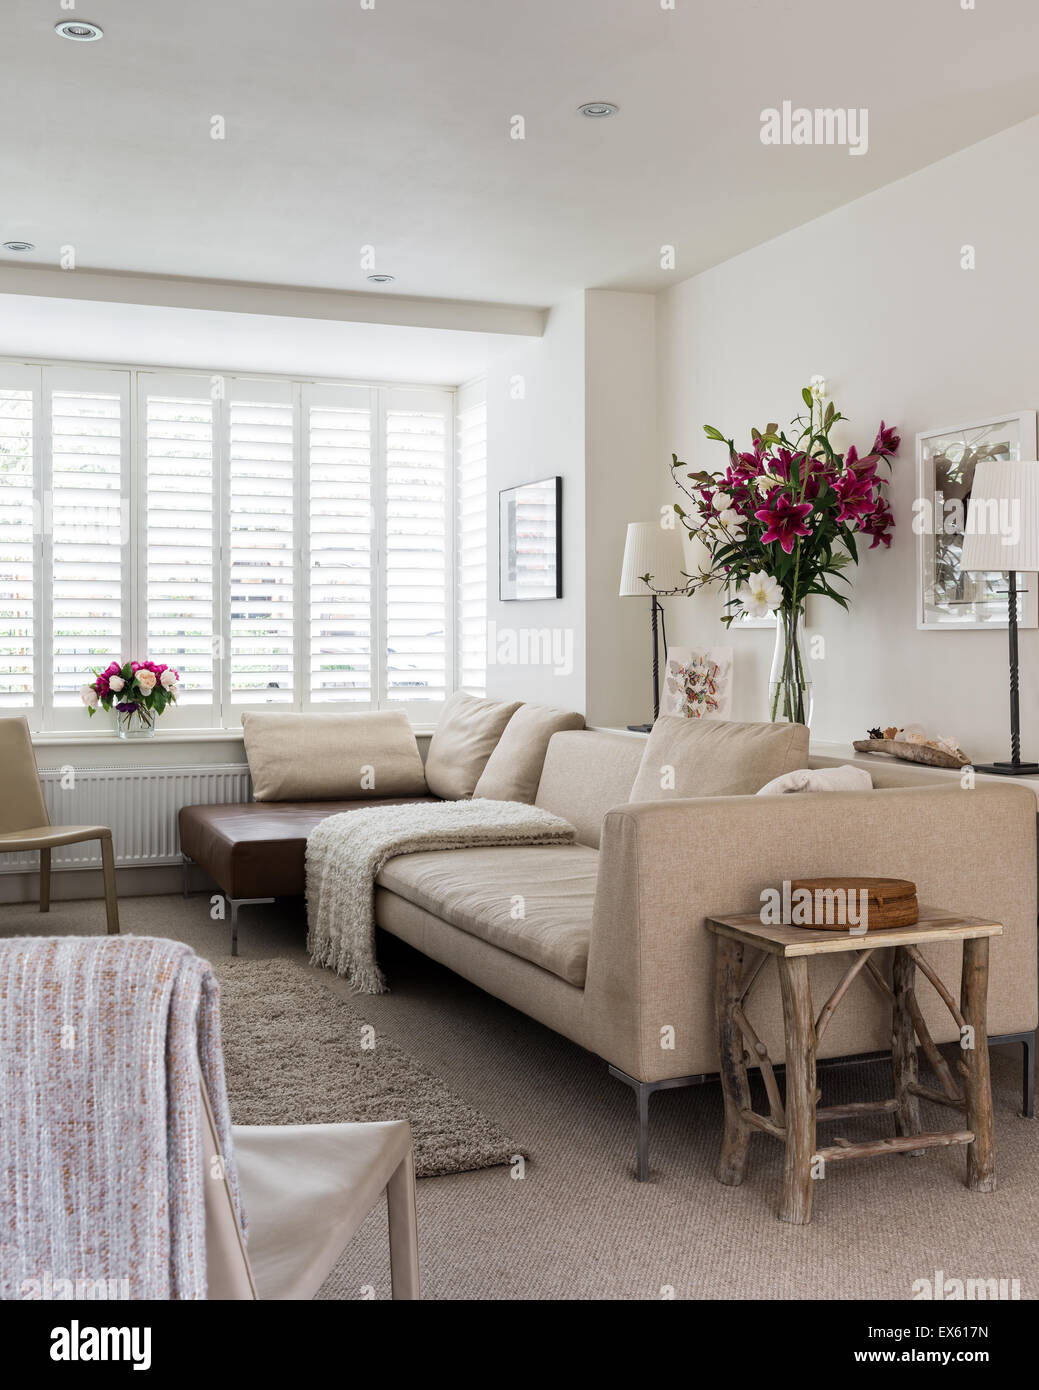 Haferflocken-Sofa und Leder Couchtisch aus B & B Italia im Wohnzimmer mit Zara  Home Beistelltisch und Lebensraum Lampen Stockfotografie - Alamy